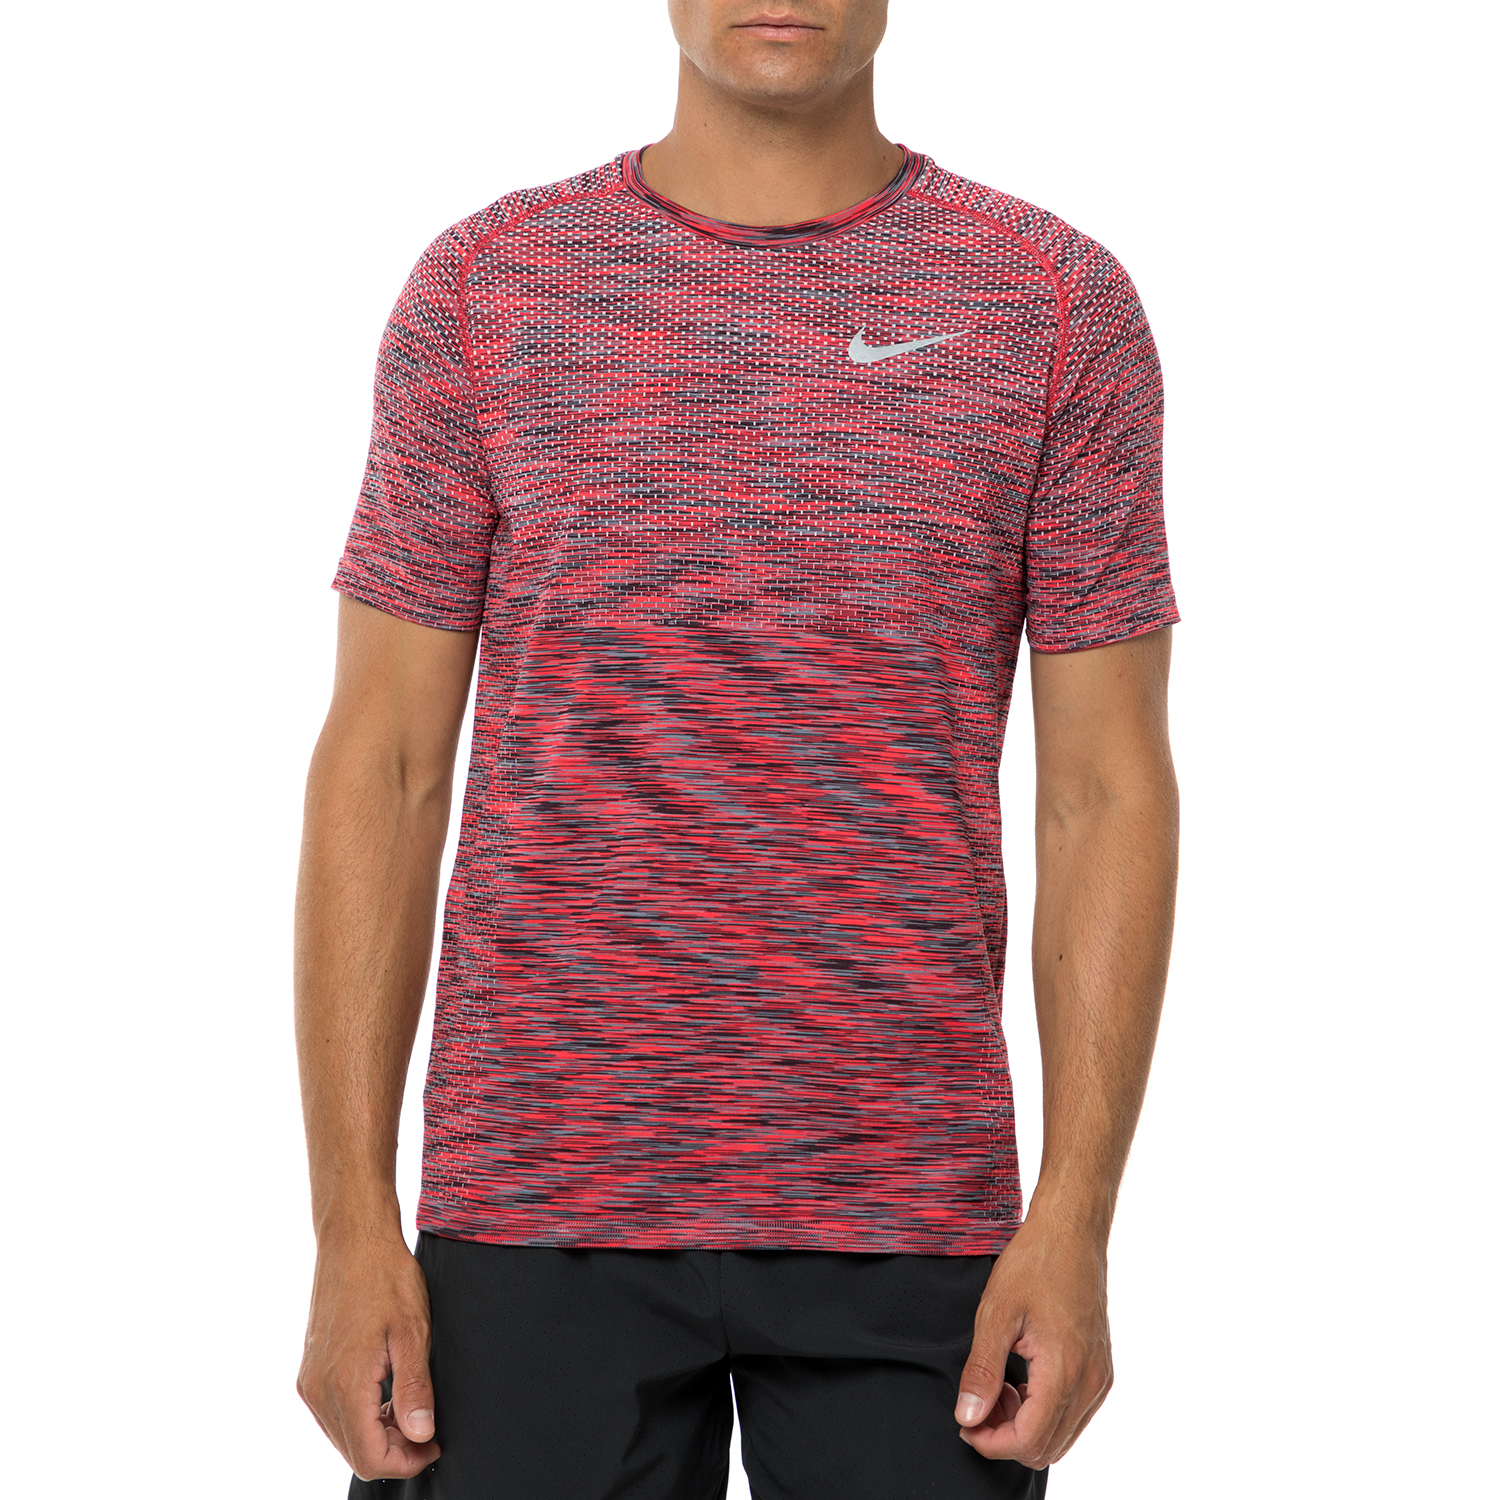 Ανδρικά/Ρούχα/Αθλητικά/T-shirt NIKE - Ανδρική αθλητική κοντομάνικη μπλούζα Nike DF KNIT κόκκινη-μαύρη